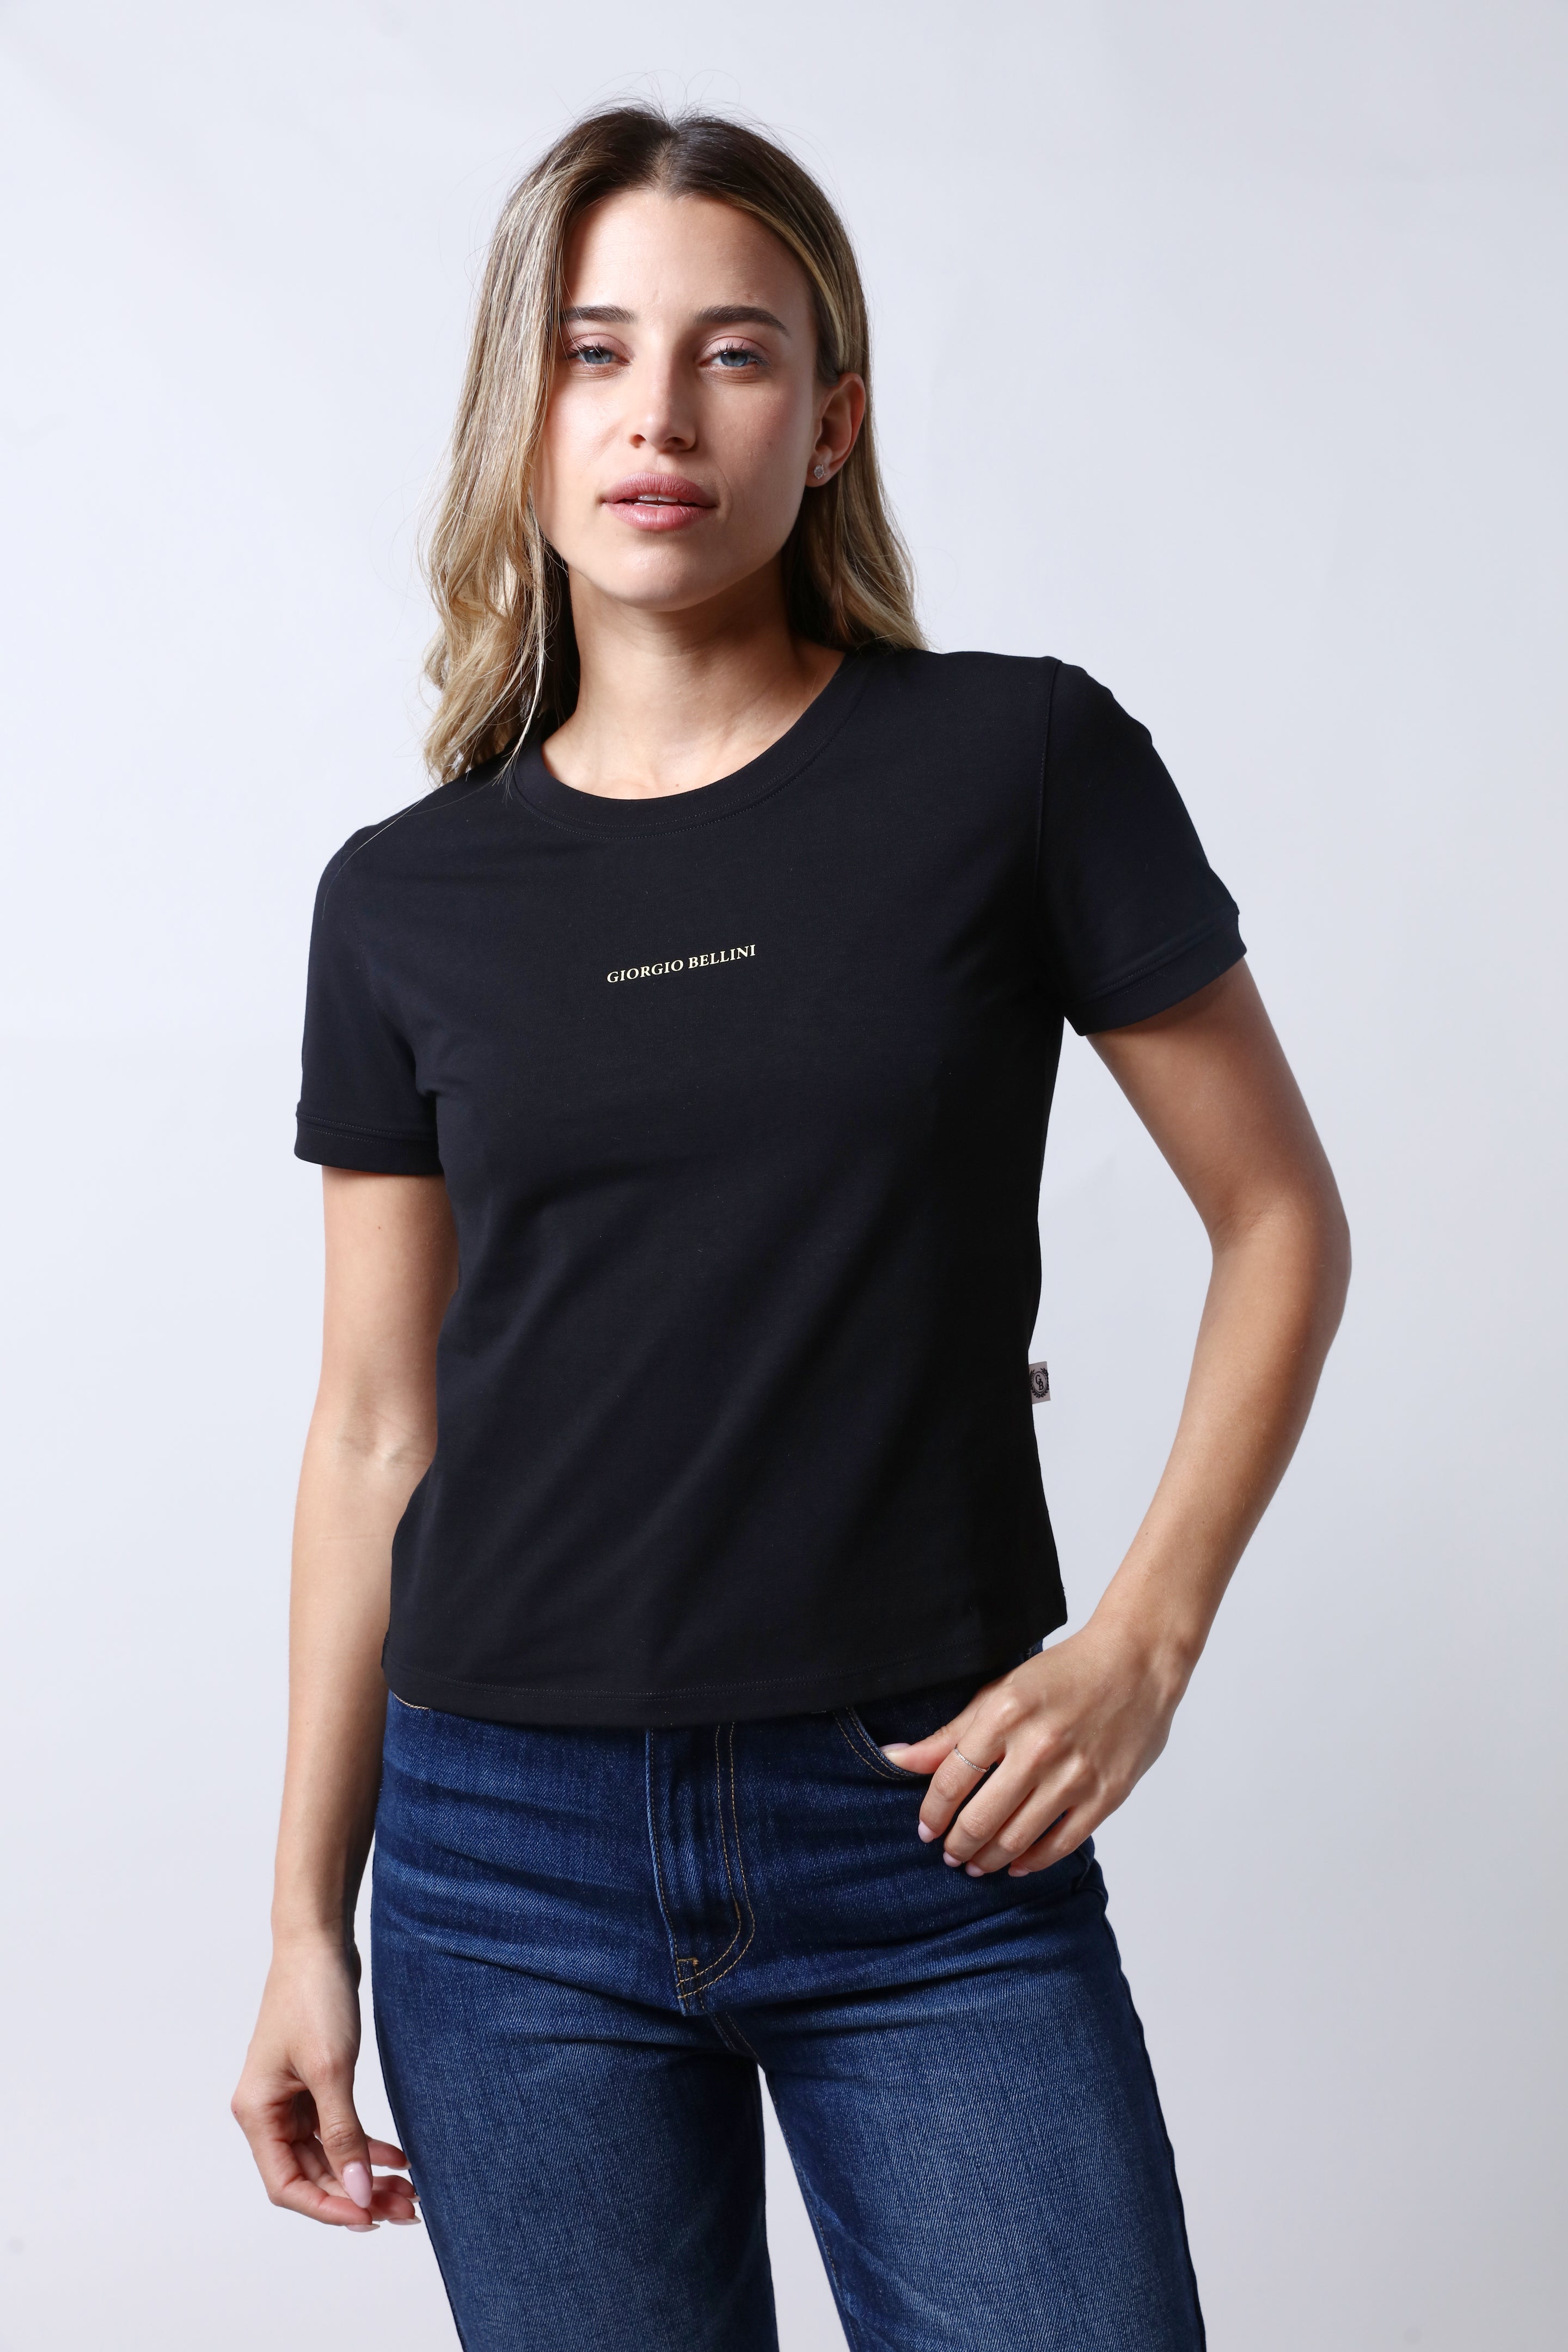 חולצת טי שירט GIORGIO BELLINI בצבע שחור לנשים